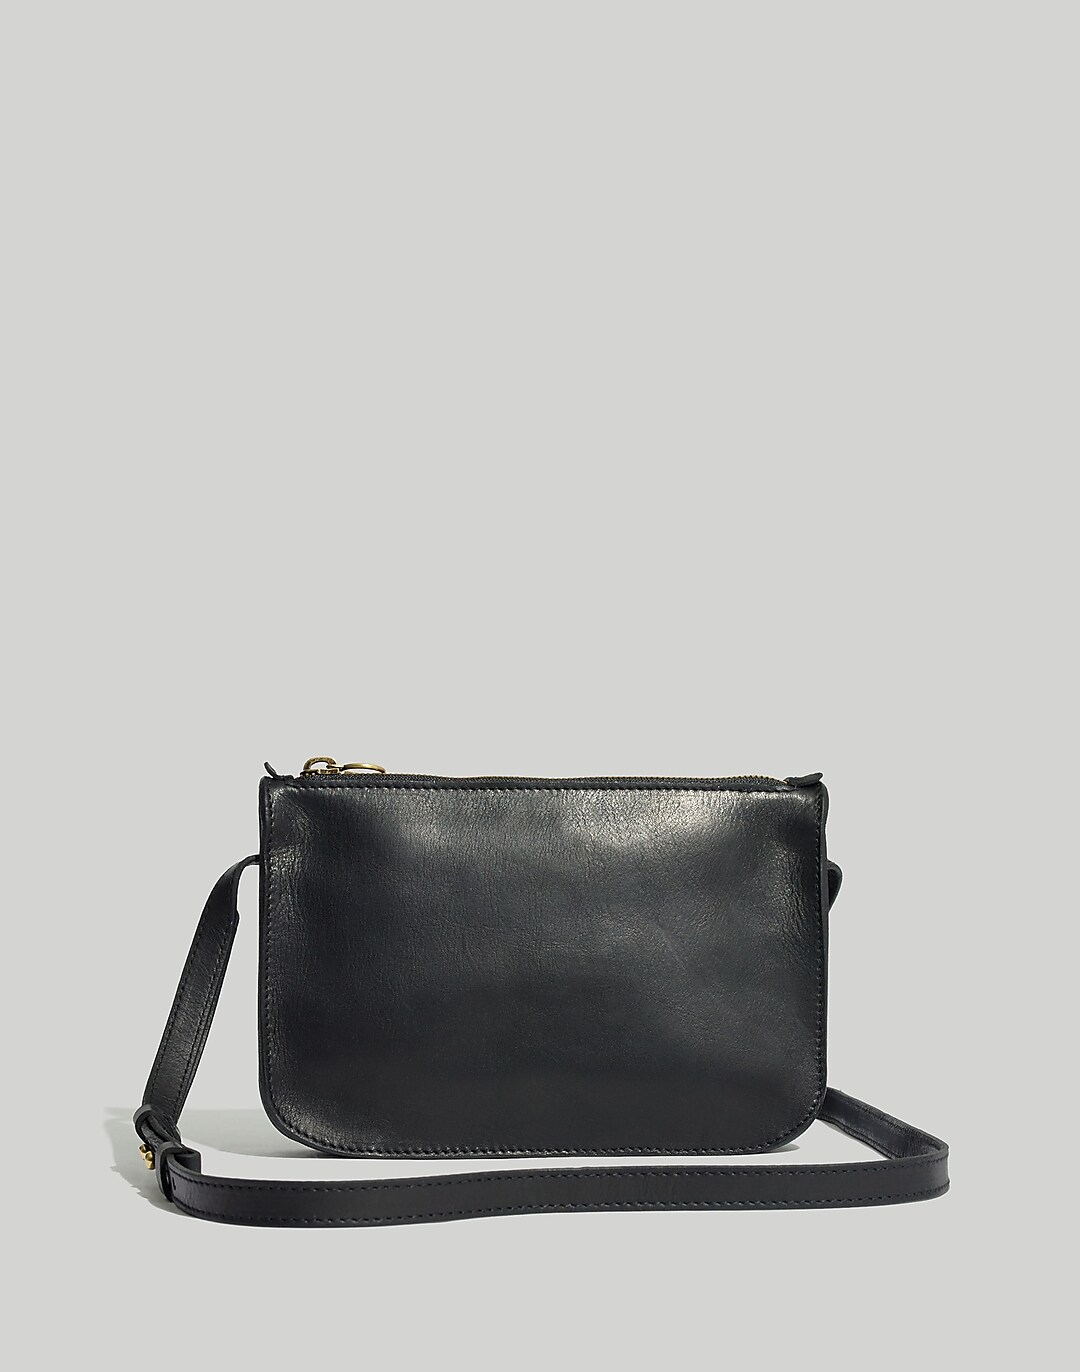 Basic Bag in Matt Black Leather 